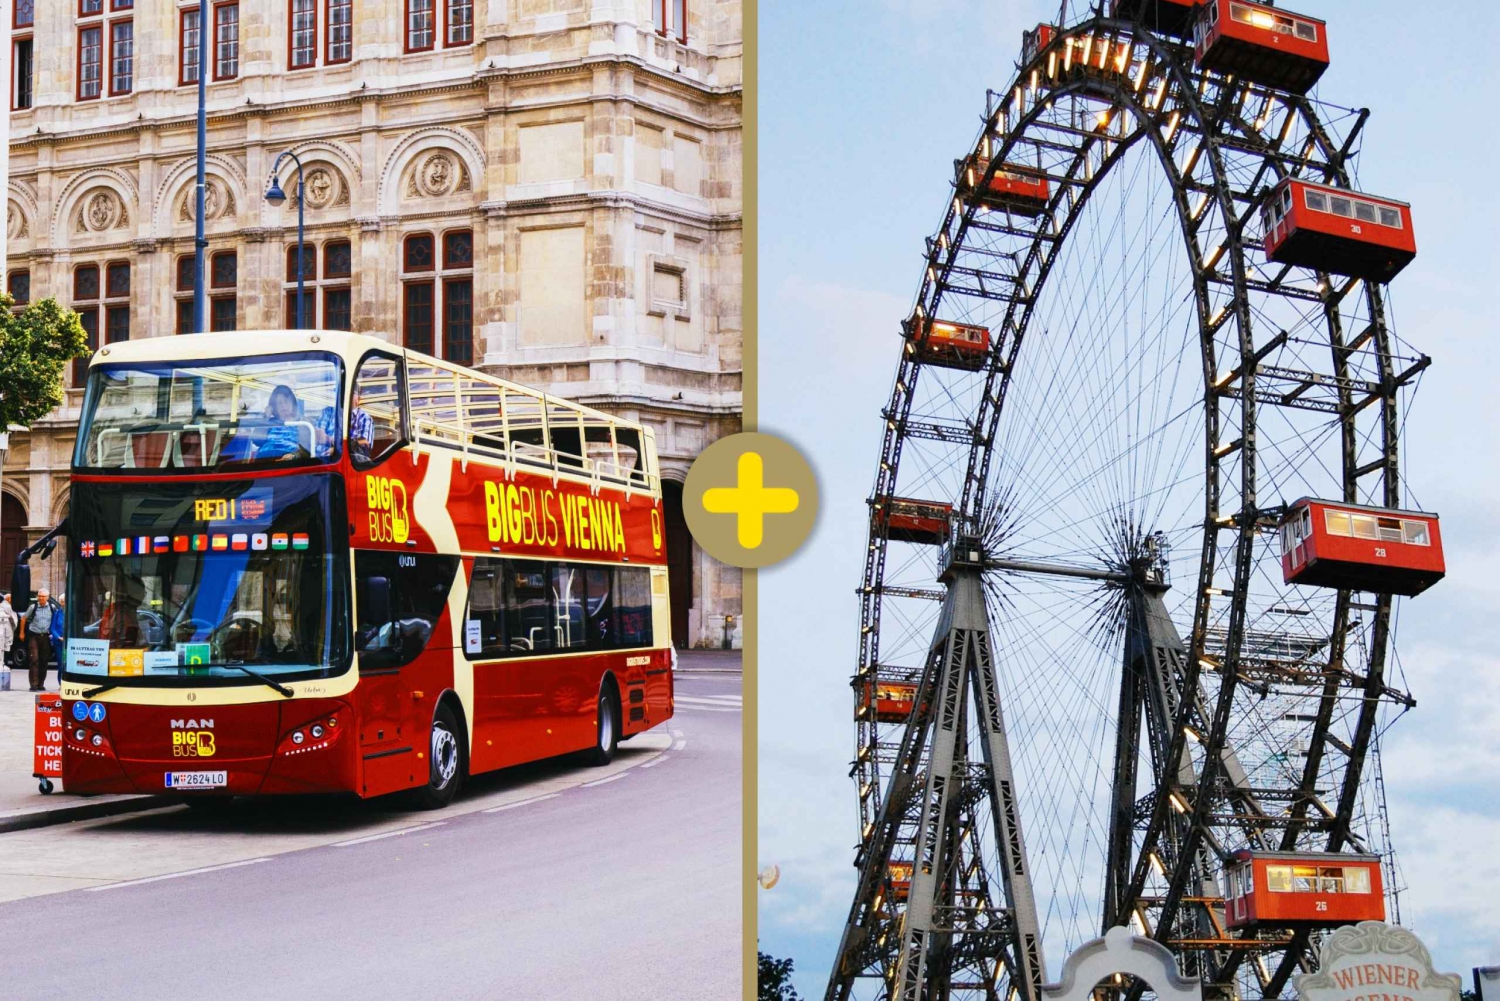 Wien: Stor buss Hop-on Hop-off-tur med jättepariserhjul